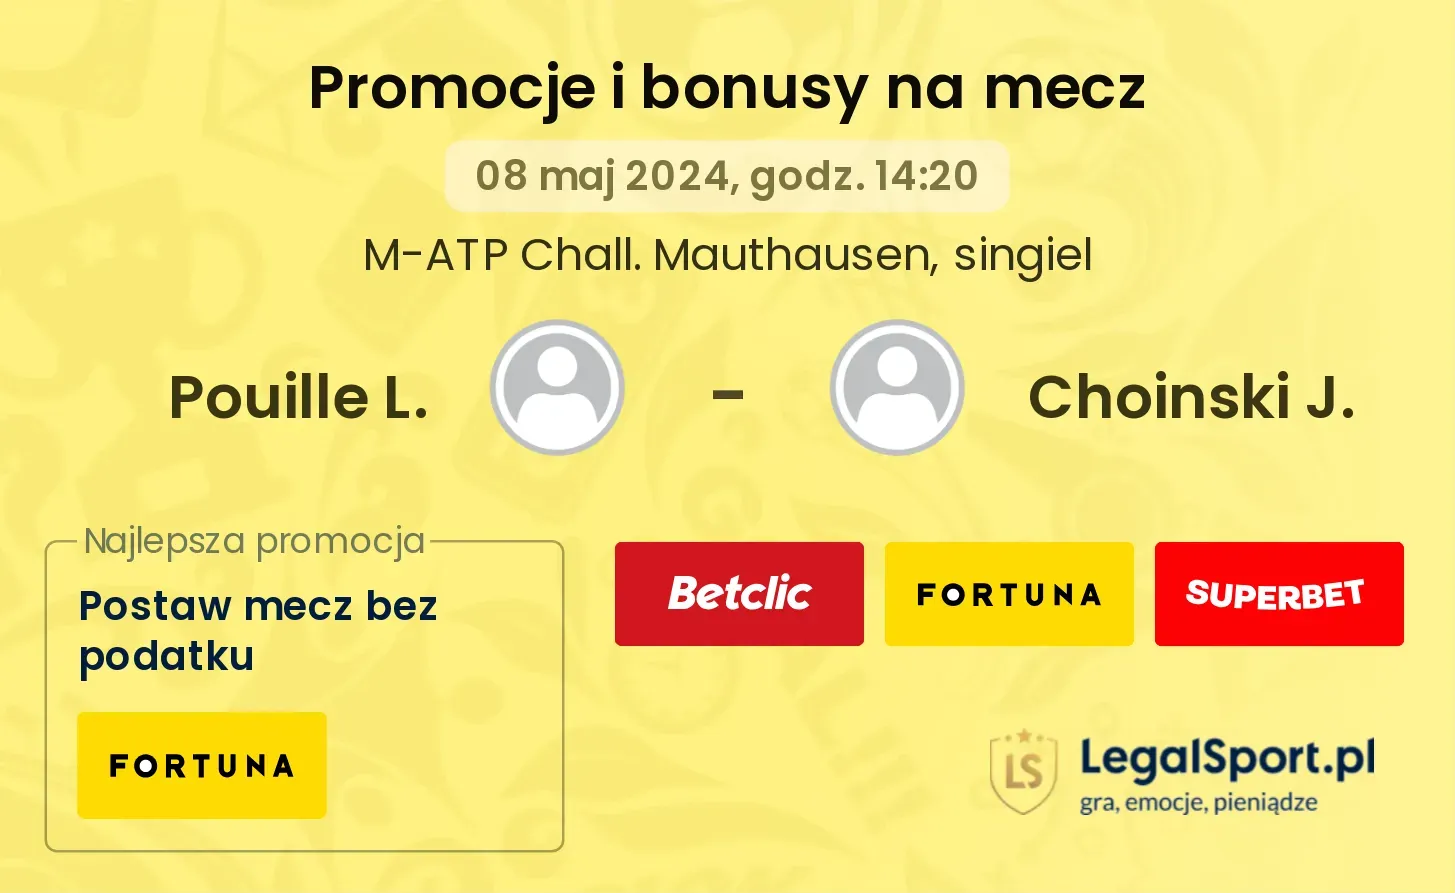 Pouille L. - Choinski J. promocje bonusy na mecz